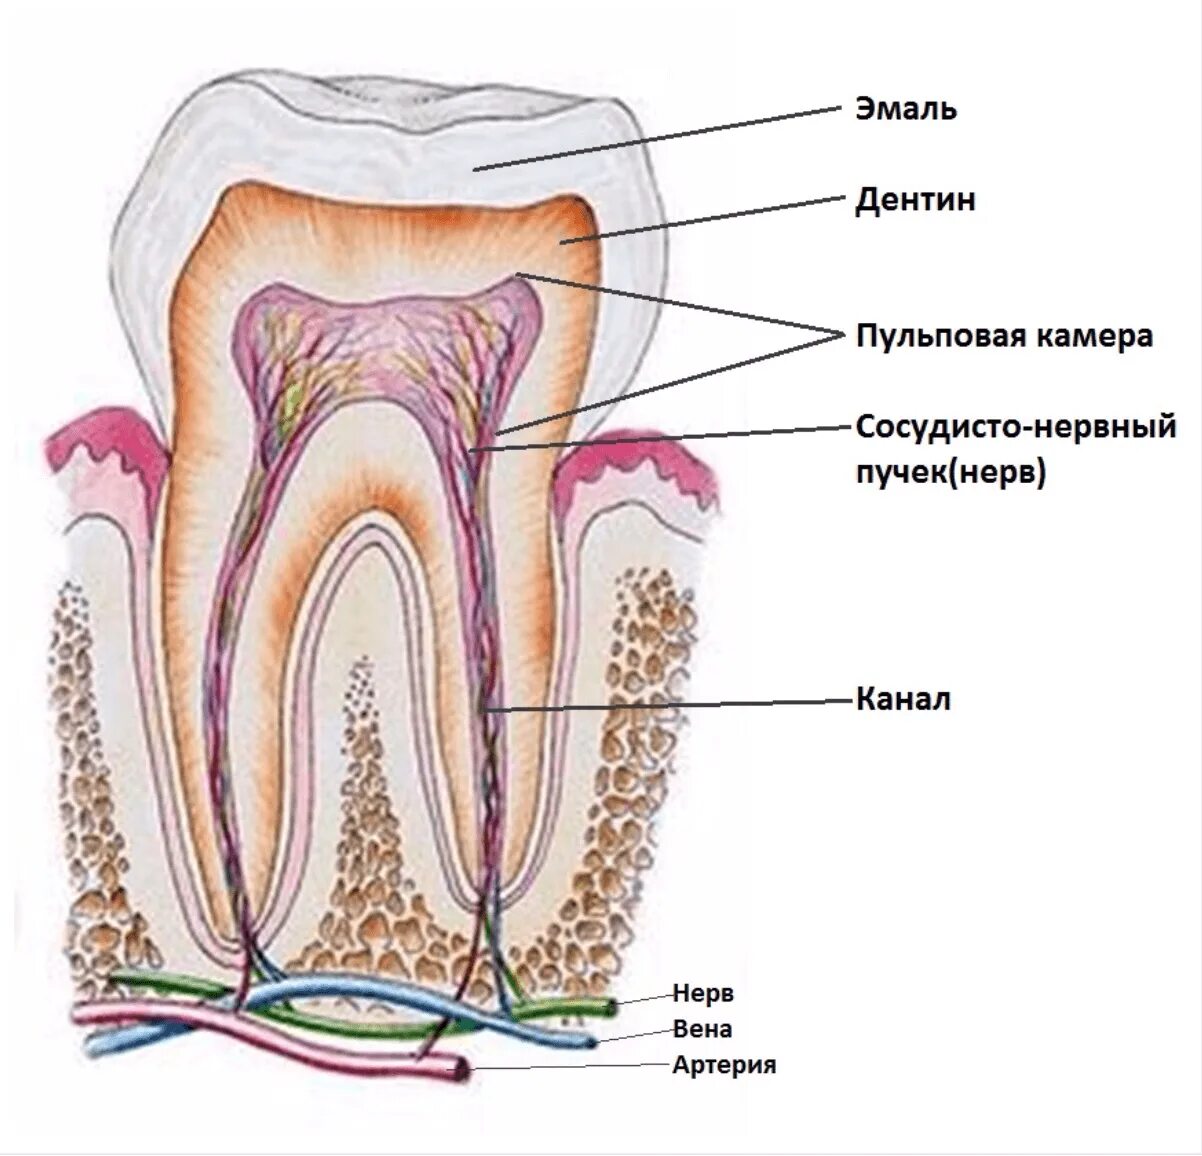 Сколько ходят с лекарством в зубе. Зубная пульпа строение зуба. Строение зуба воспаление пульпы. Пульпа зуба анатомия зуба. Строение зуба кариес пульпит.